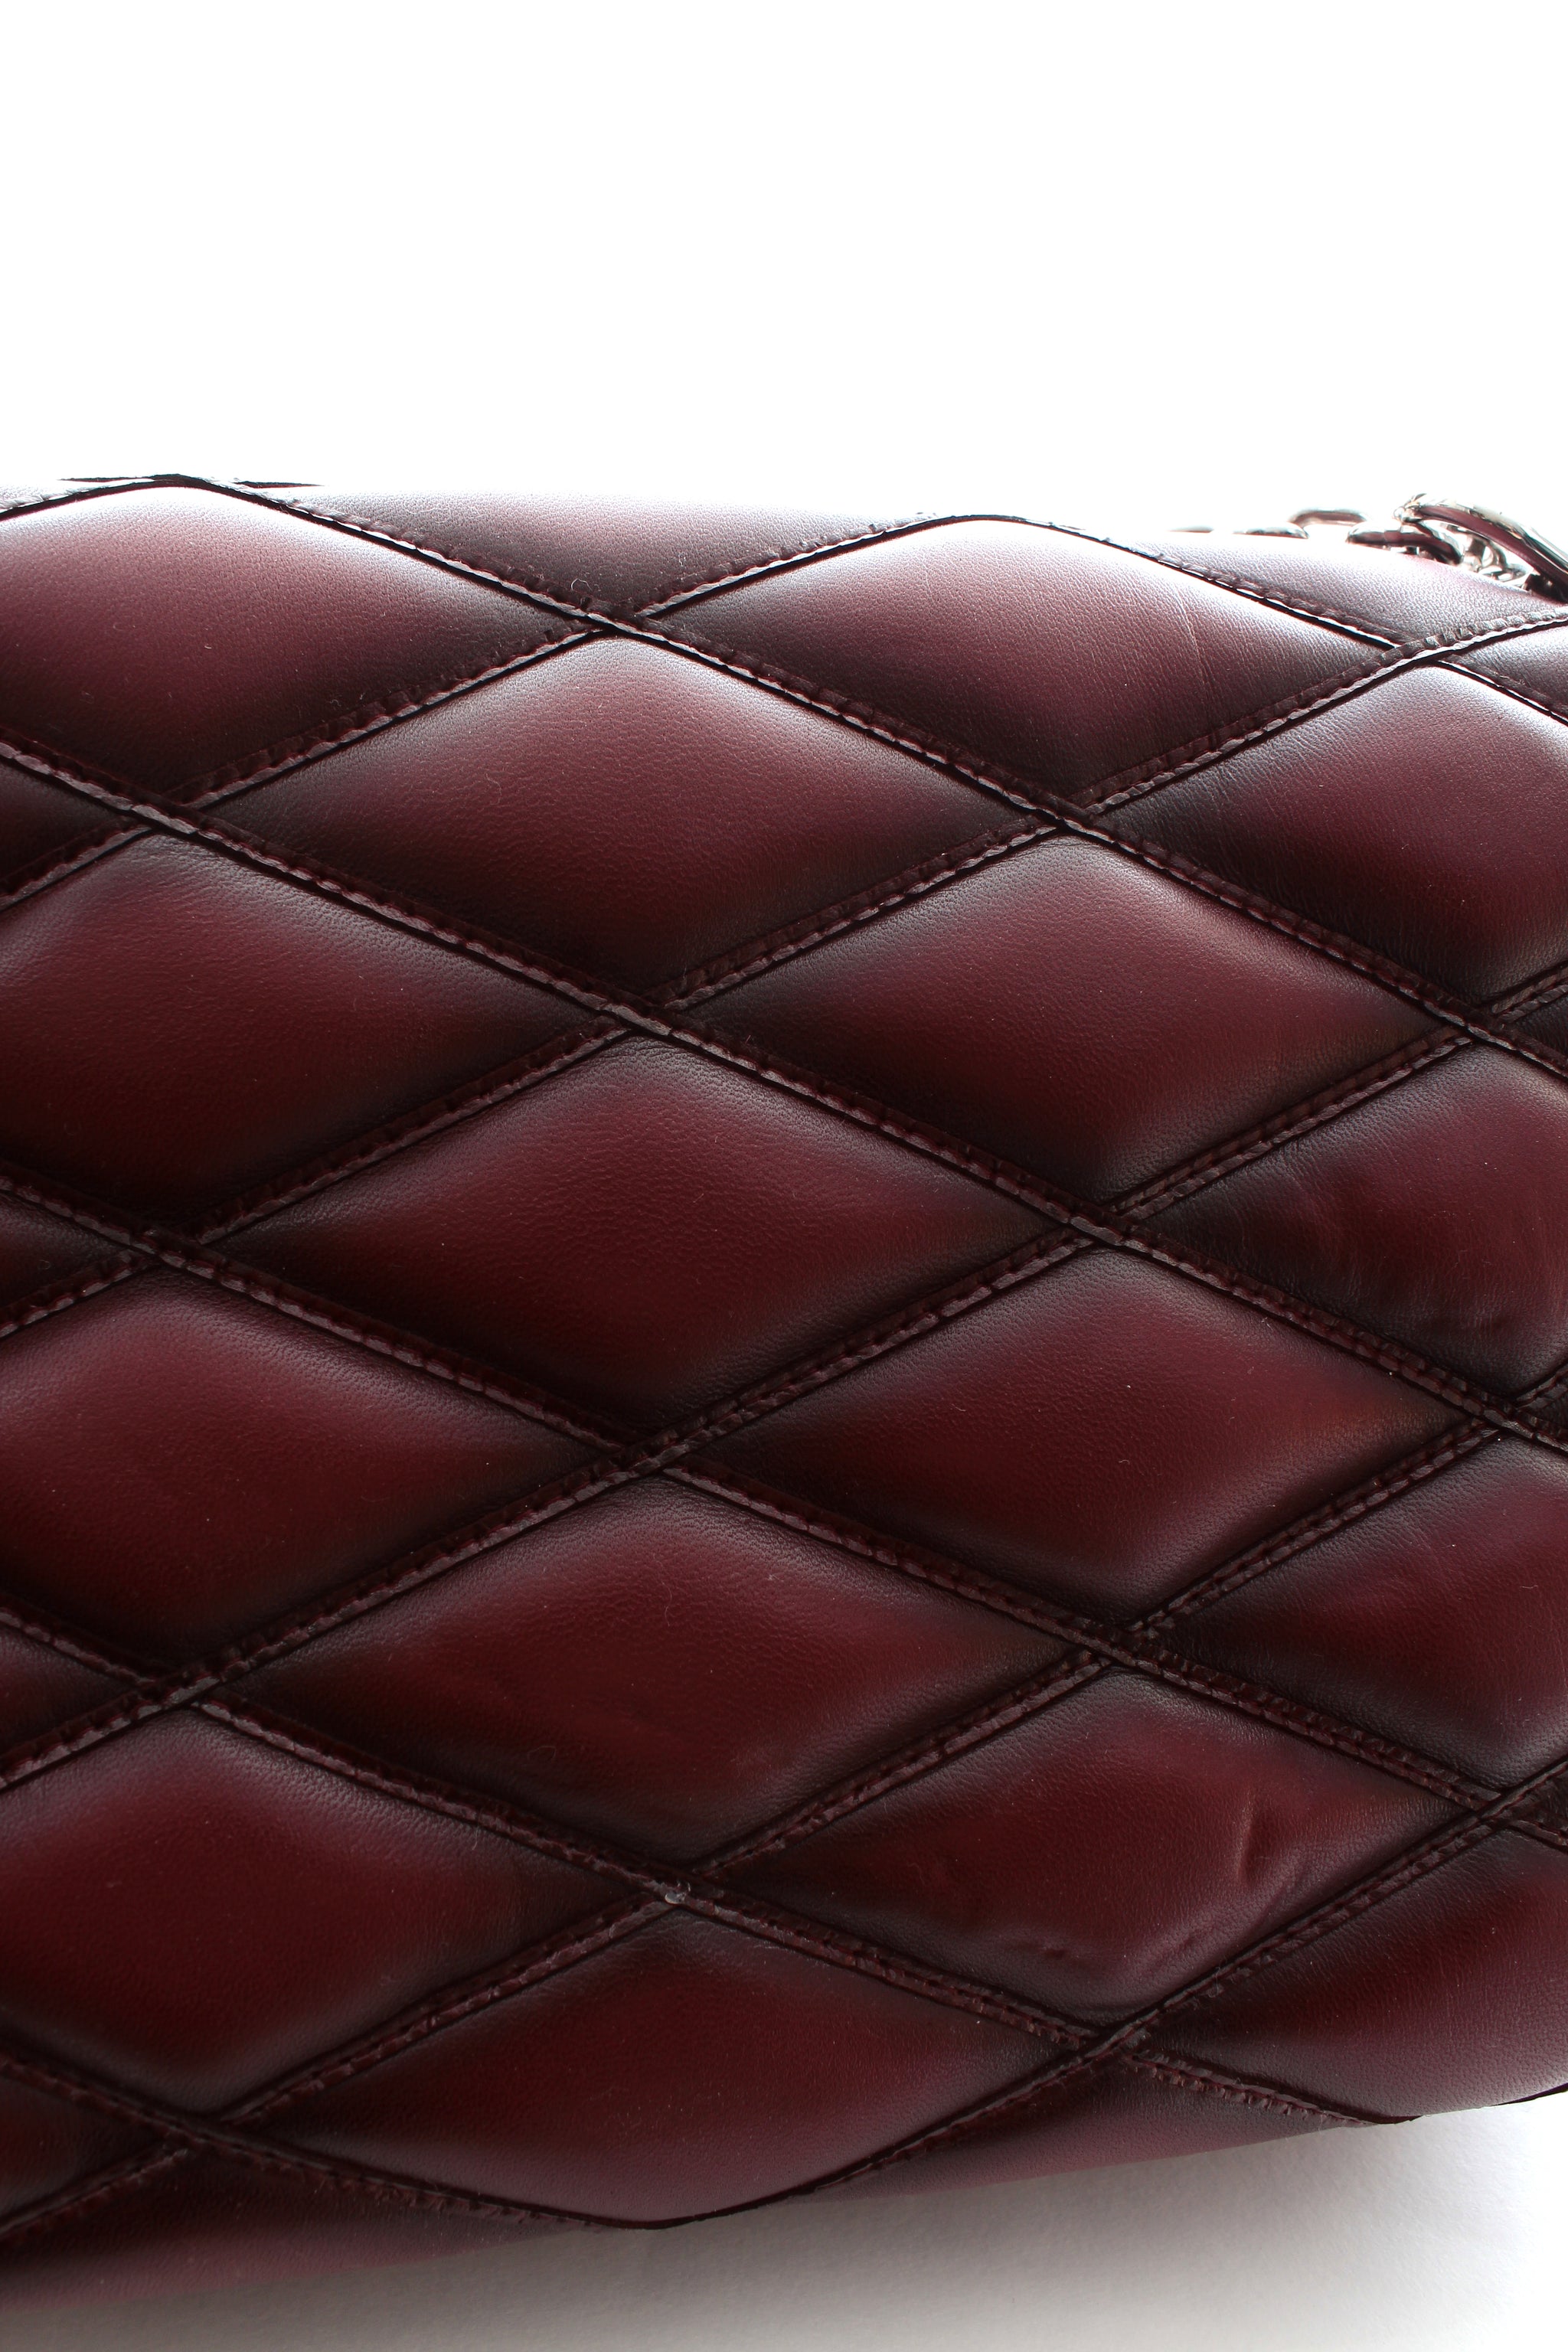 Louis Vuitton Malletage GO-14 MM - Black Shoulder Bags, Handbags -  LOU556703